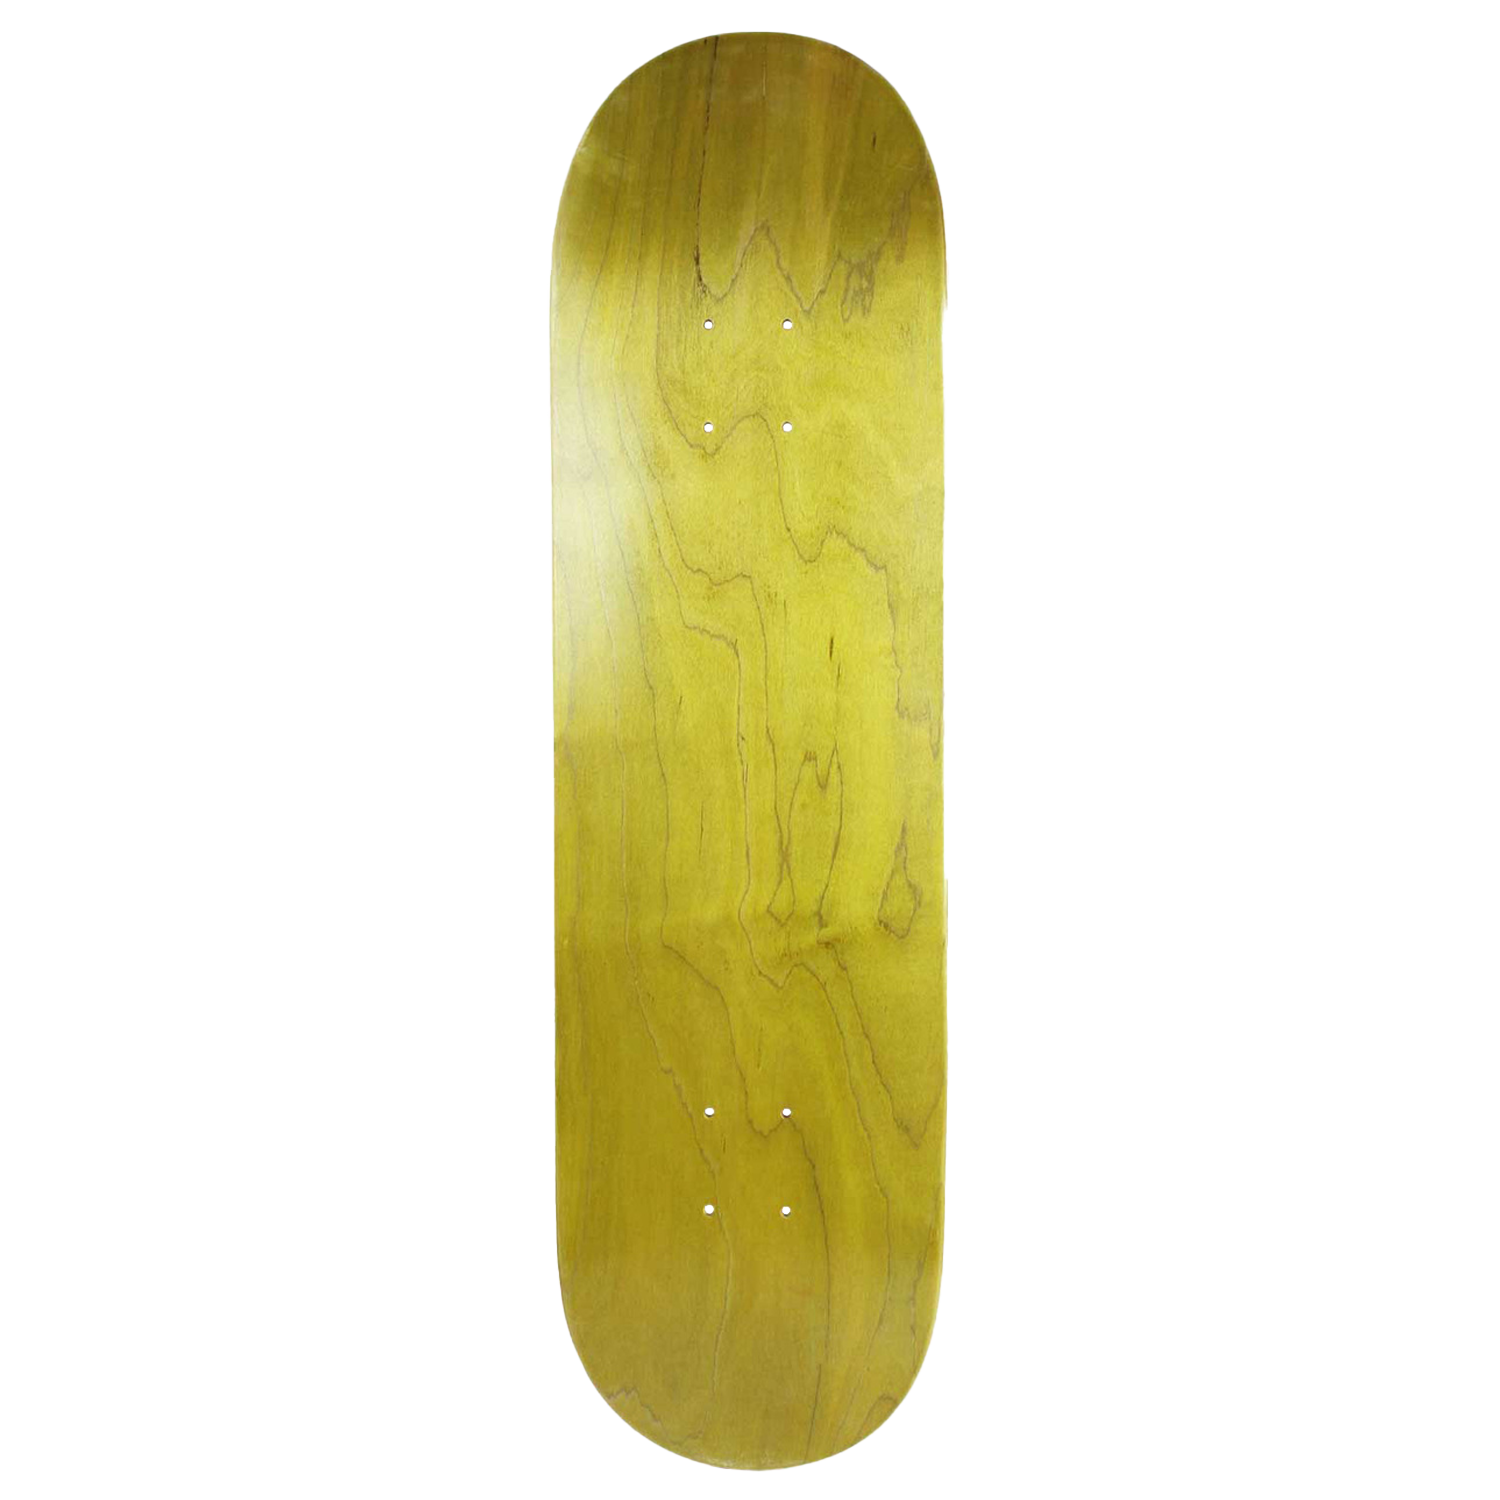 Blank Skateboard Decks from Moose Skateboards and Longboards